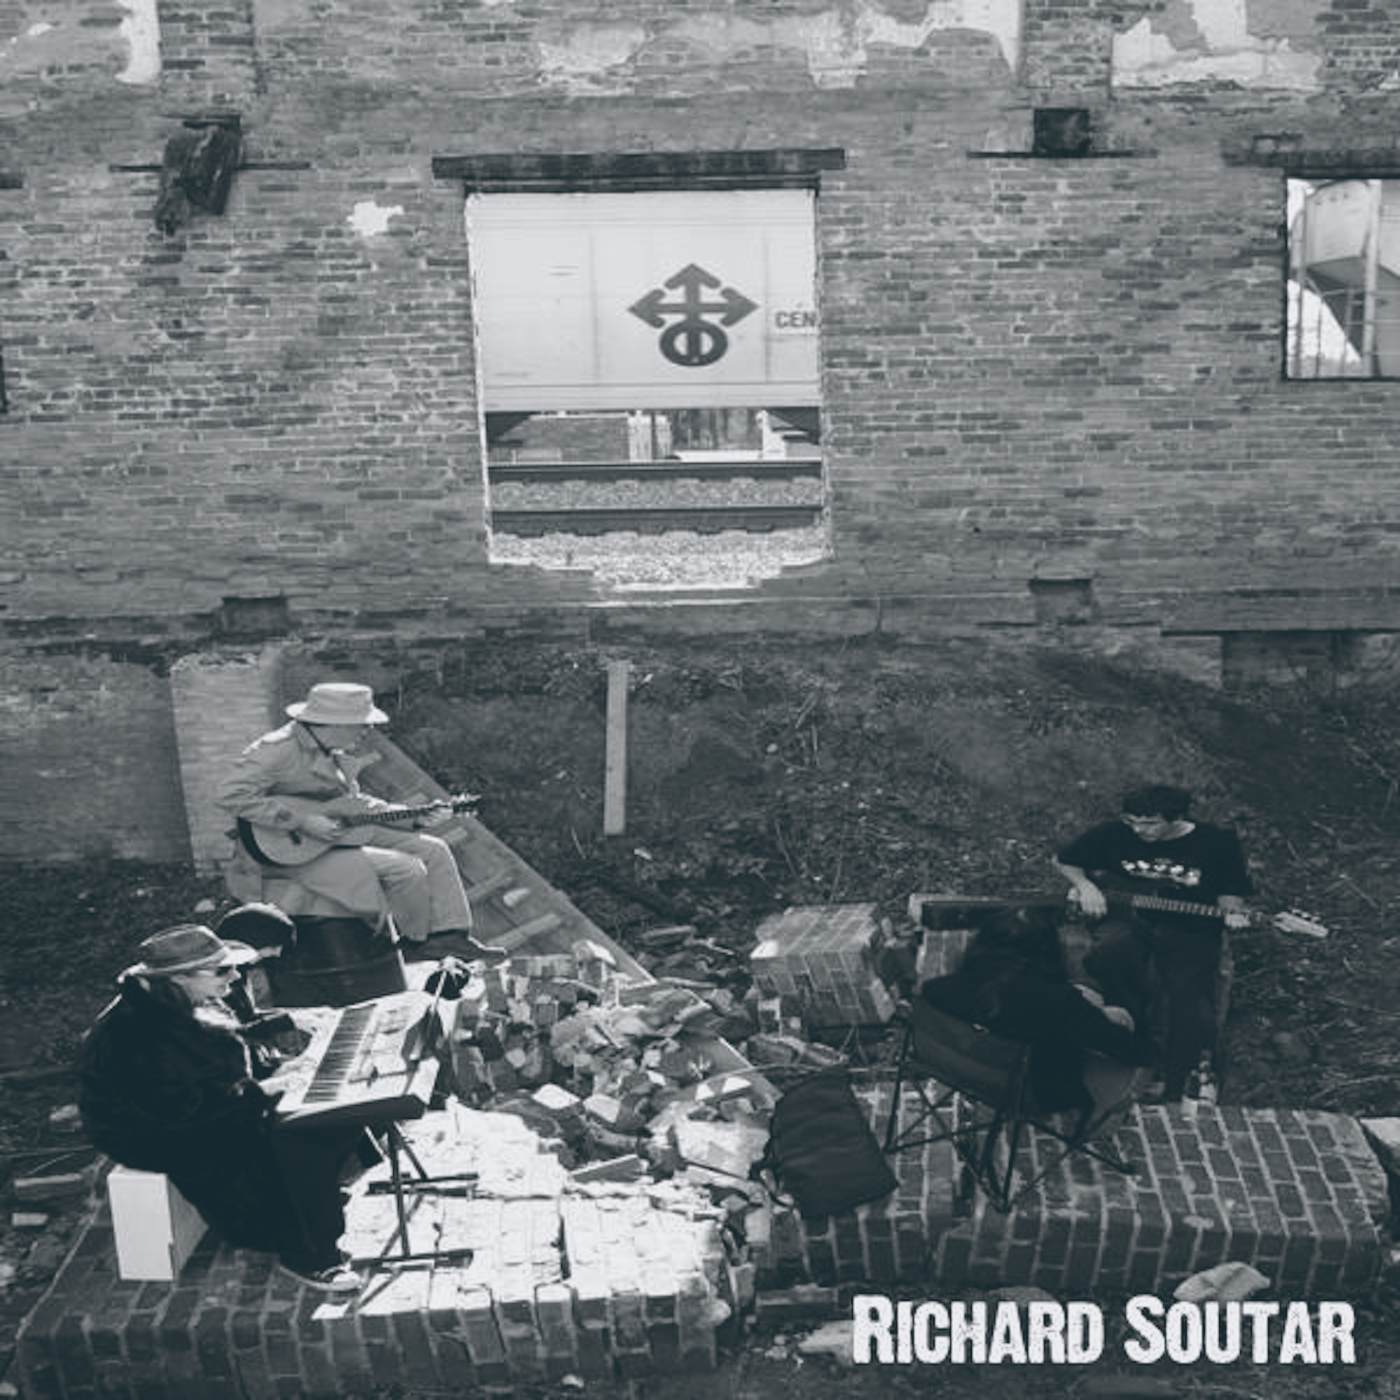 Richard Soutar